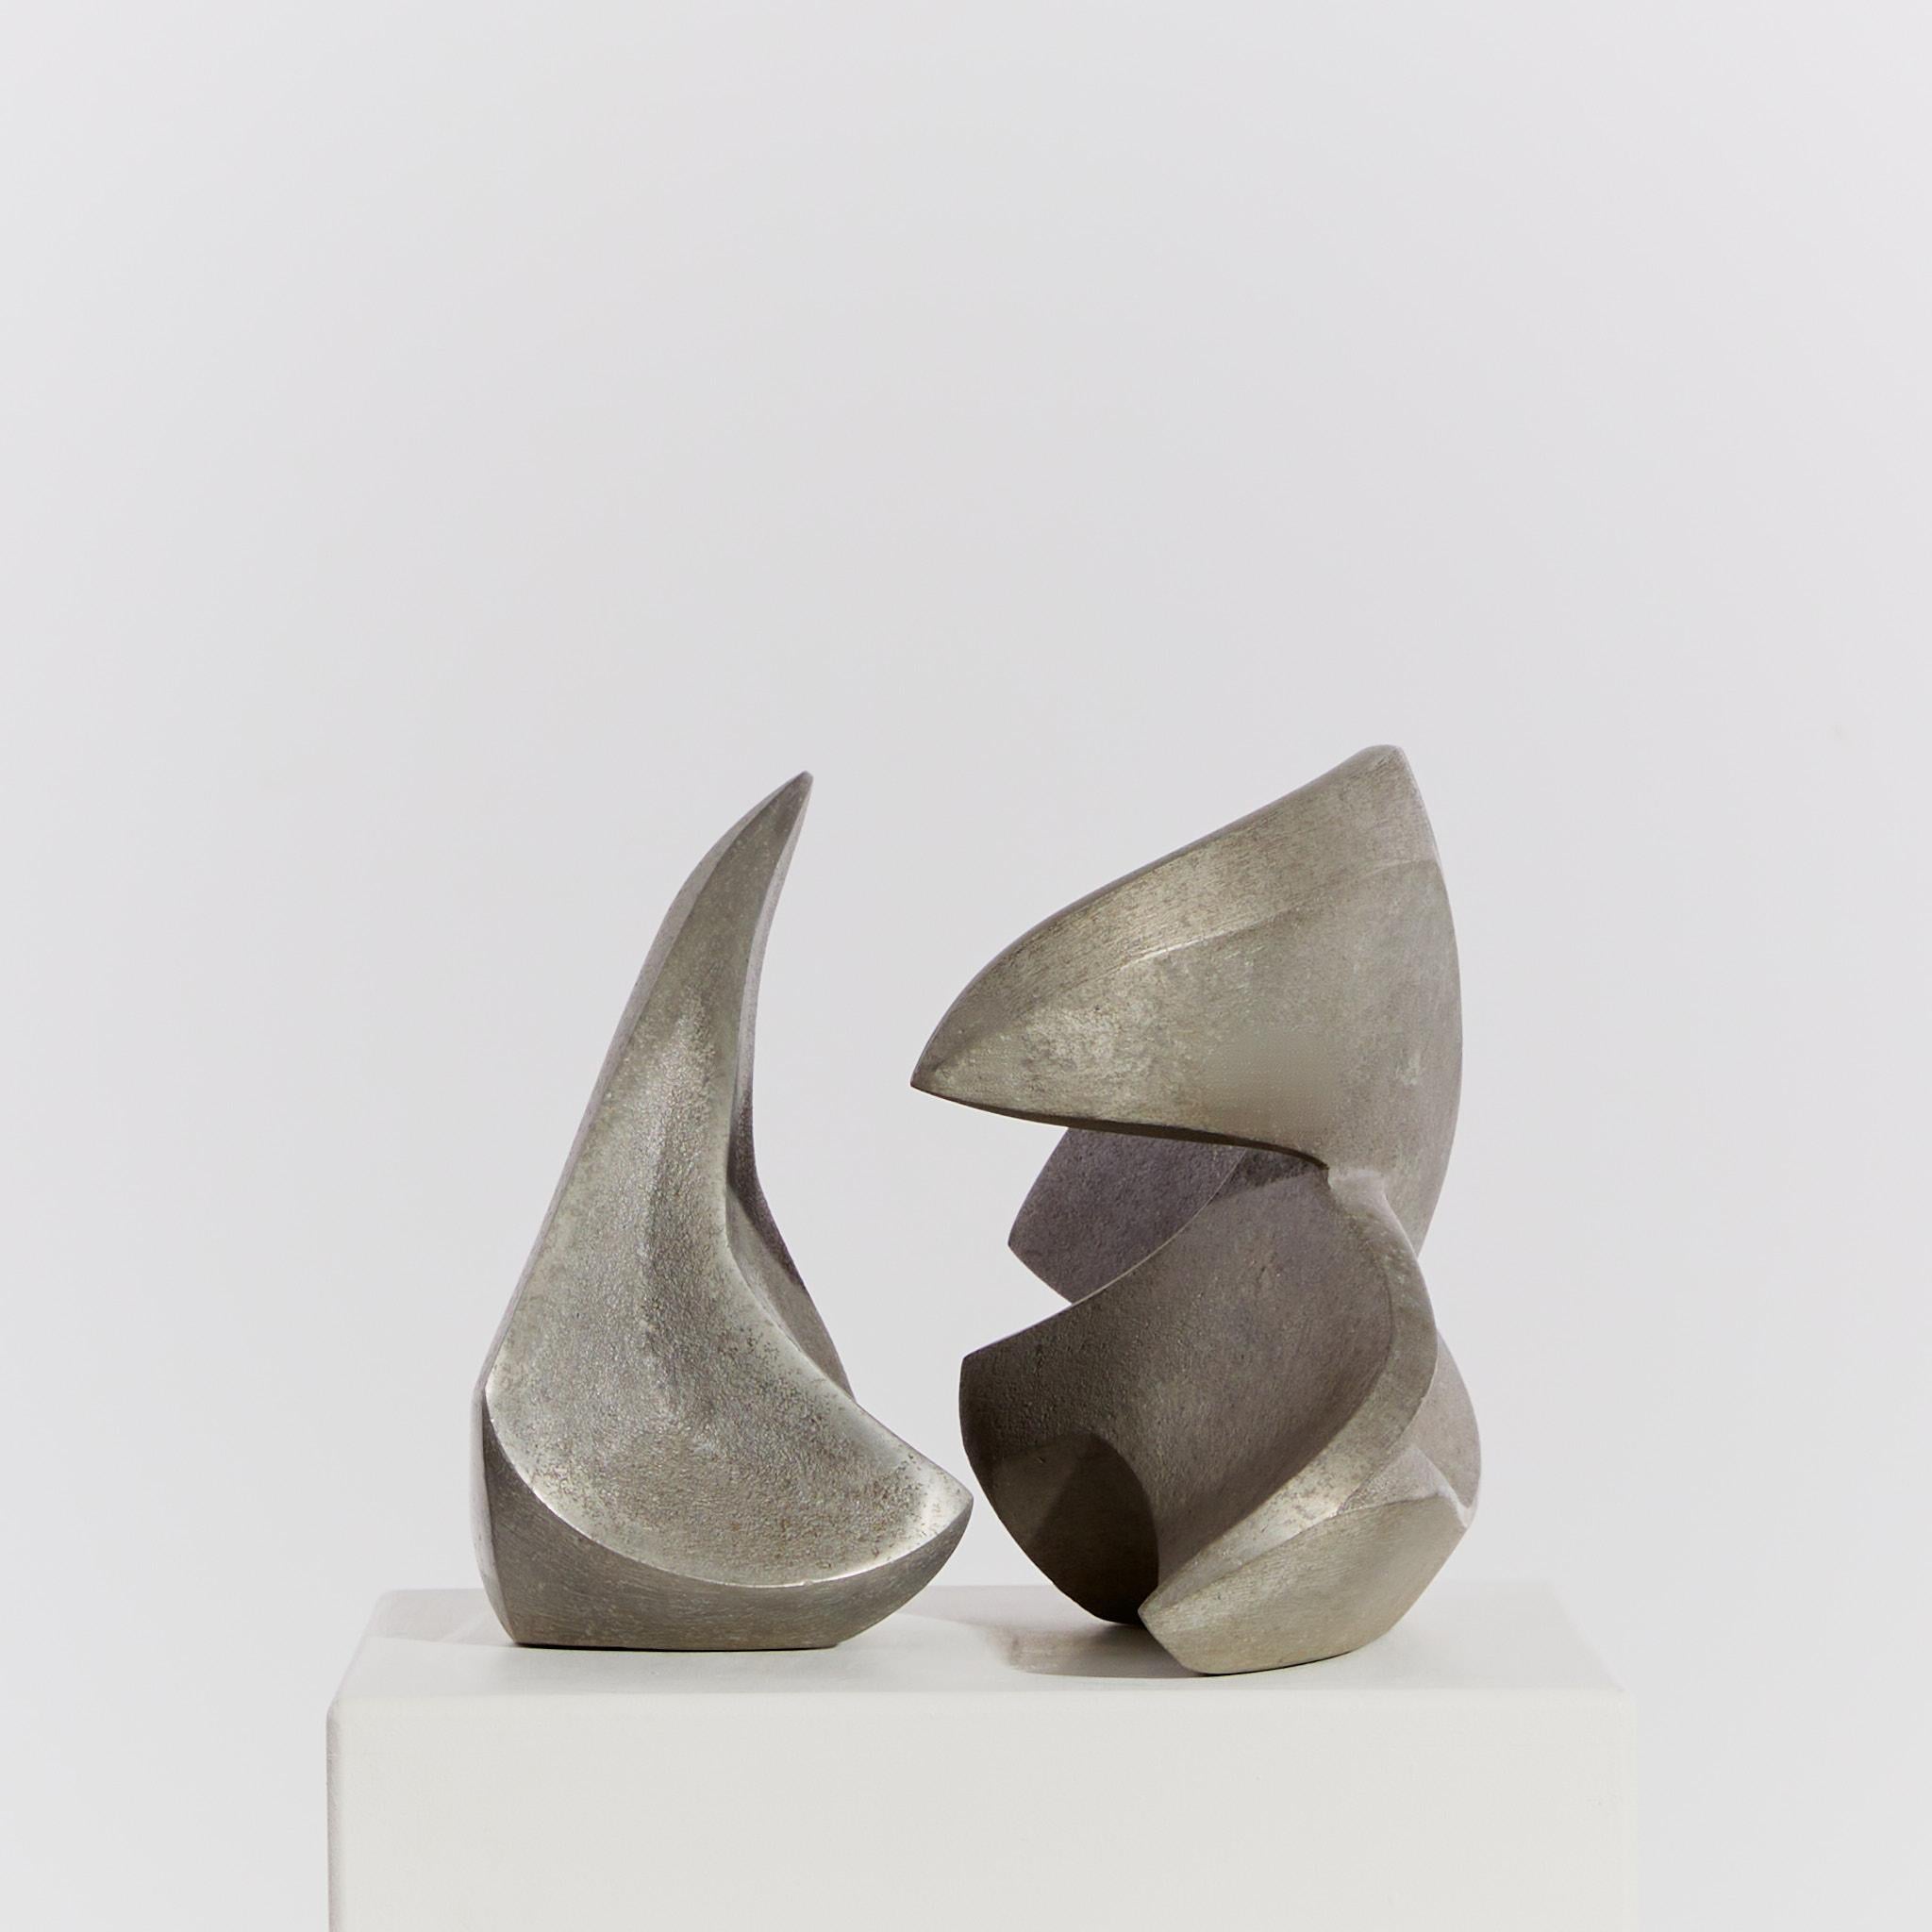 Pair of Cast Aluminium Abstract Sculptures 9